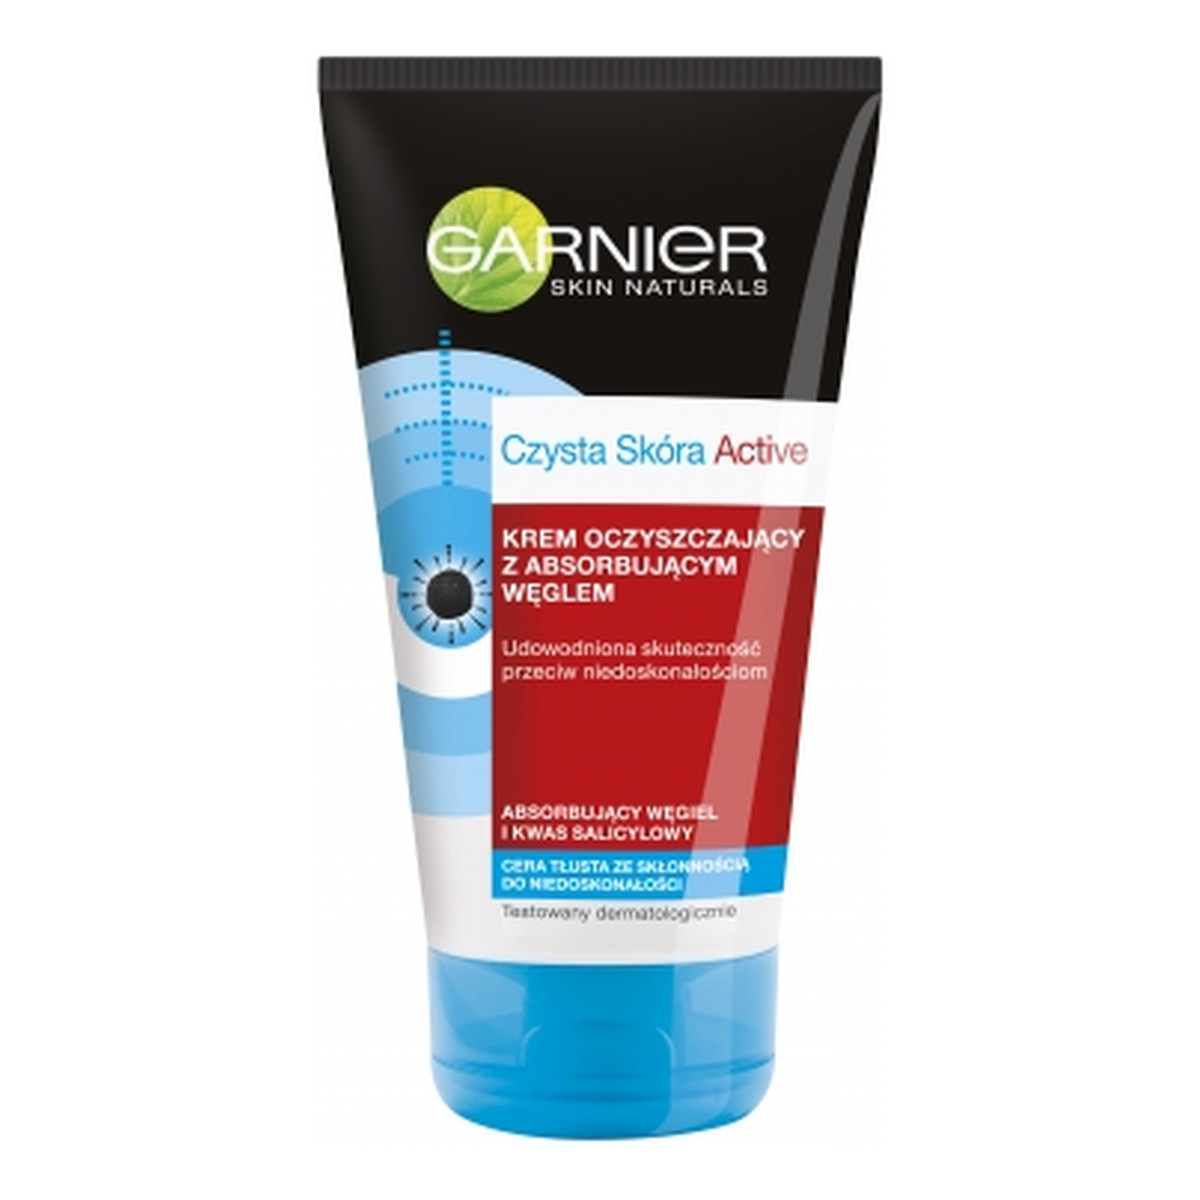 Garnier Czysta Skóra Active Skin Naturals Krem-Żel Oczyszczający z Absorbującym Węglem 150ml